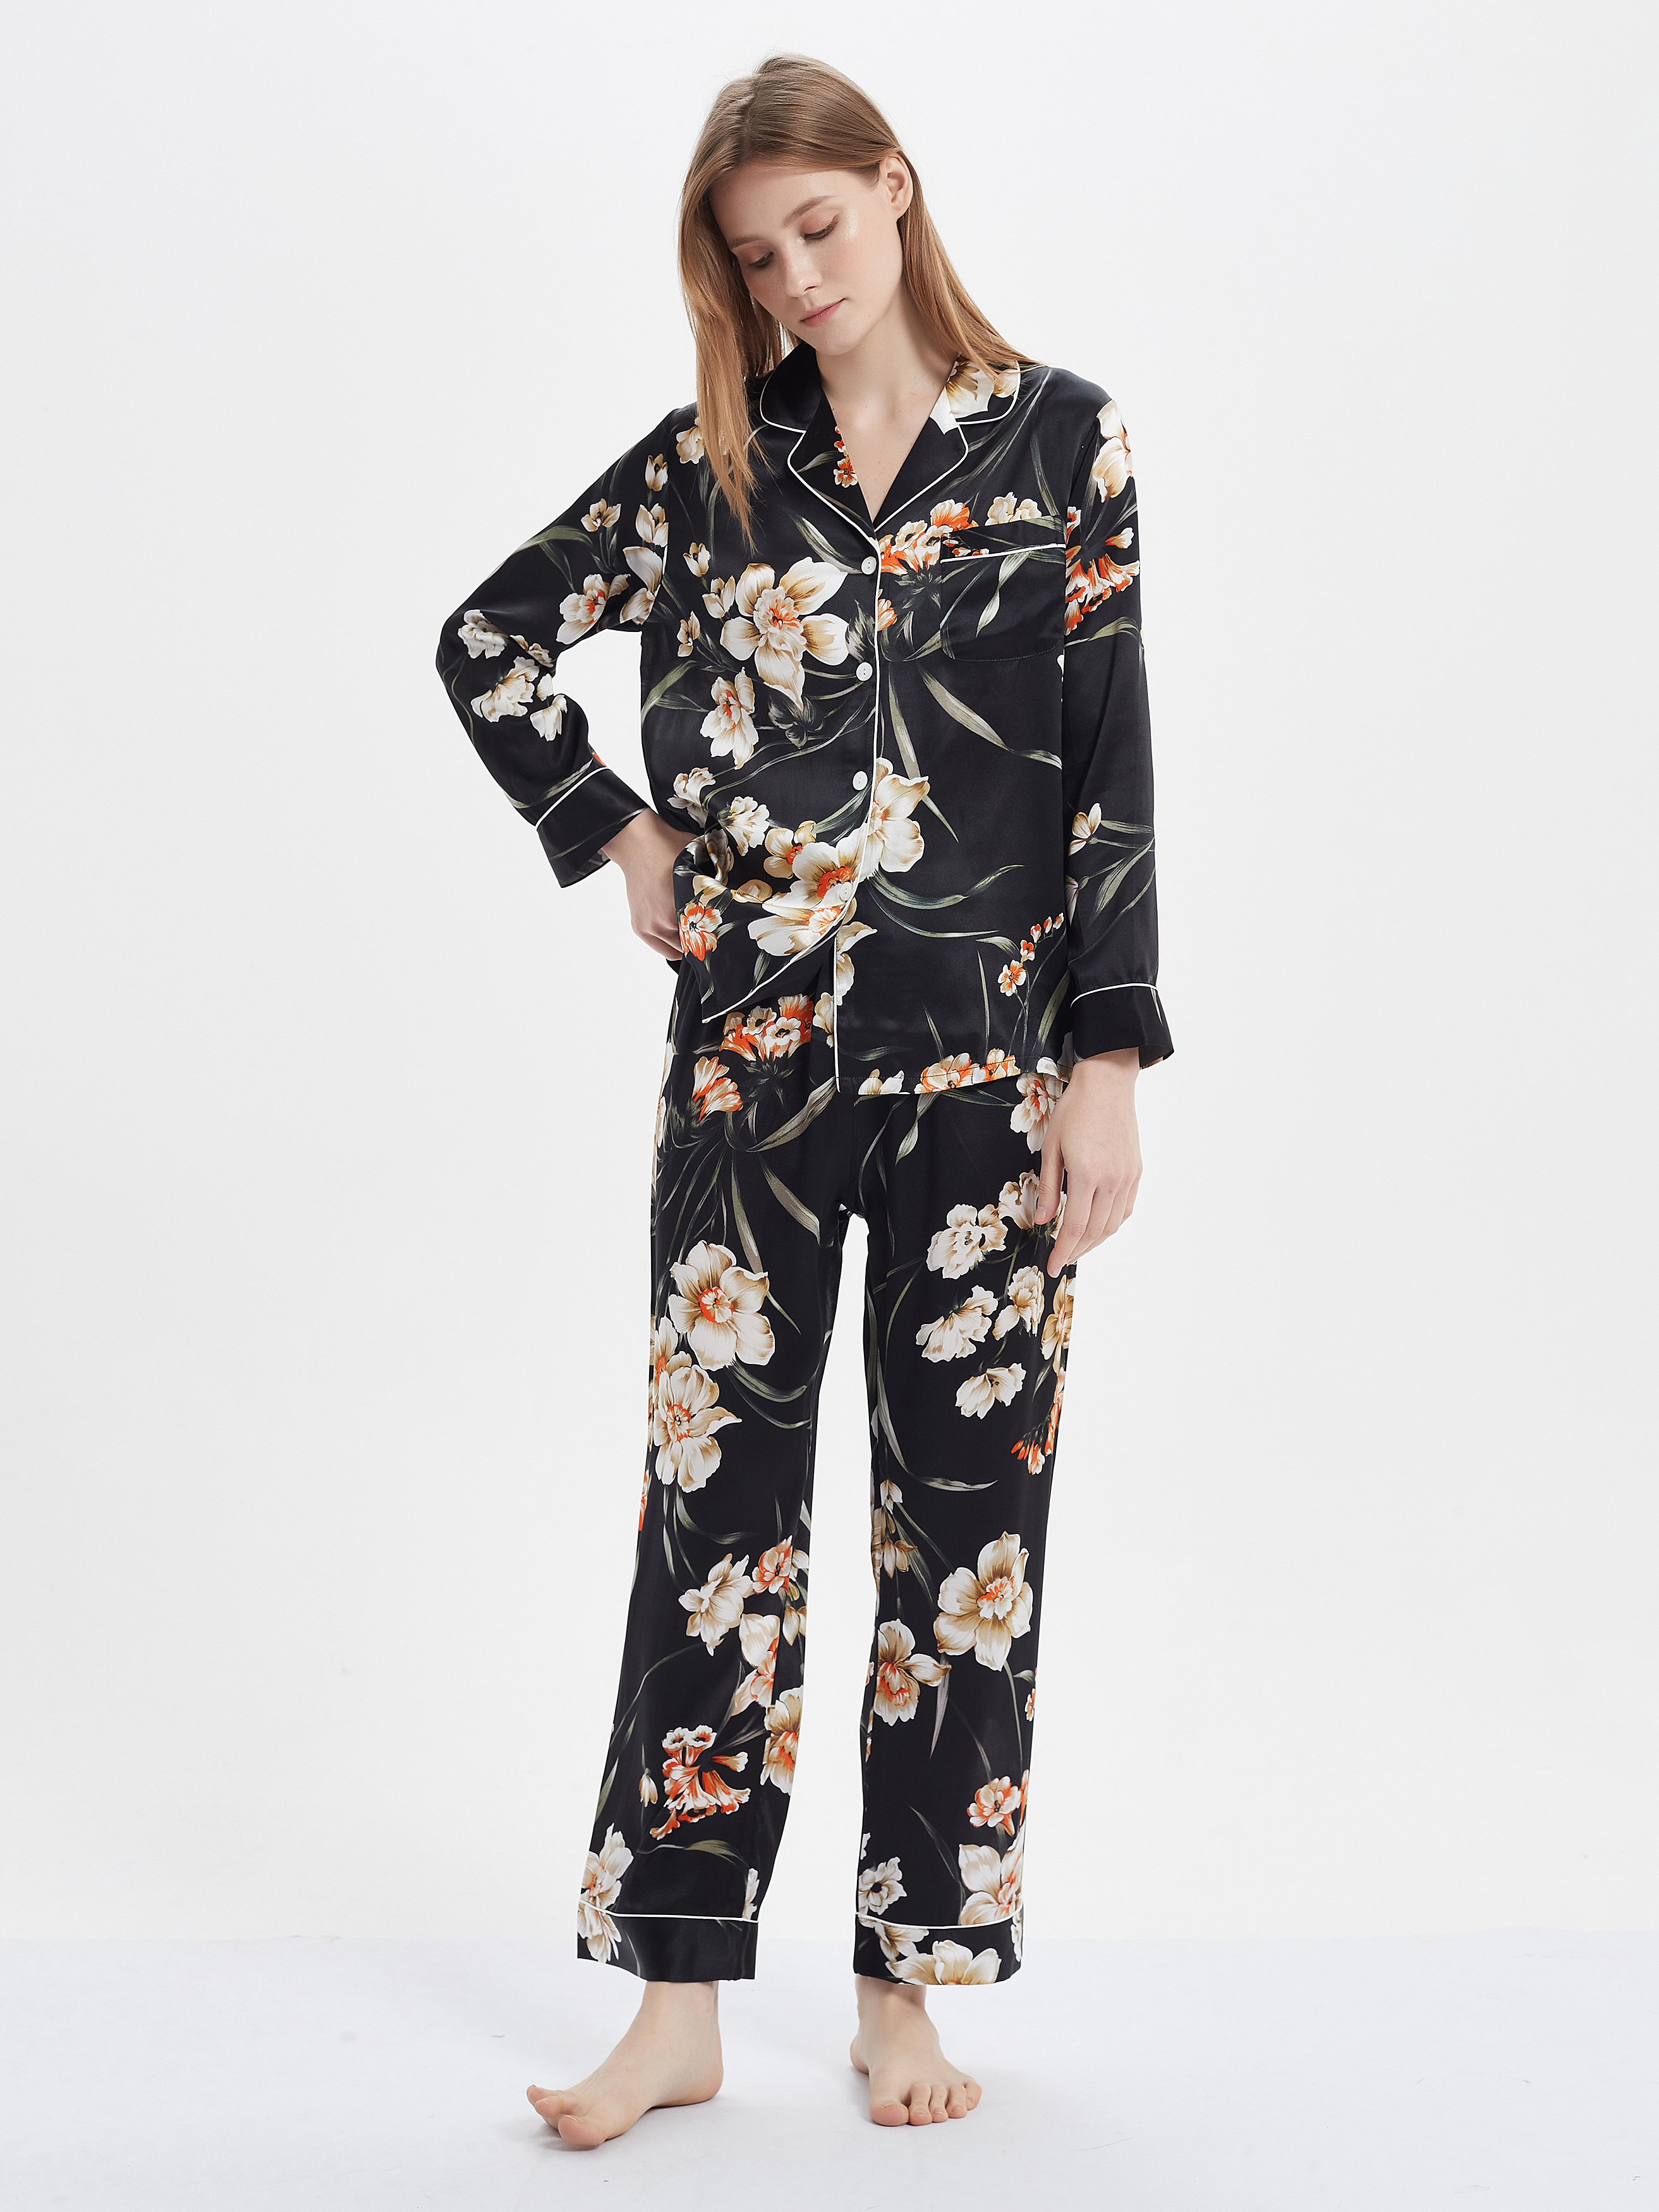 Printed Real Silk Pajama Set Women's Style Black